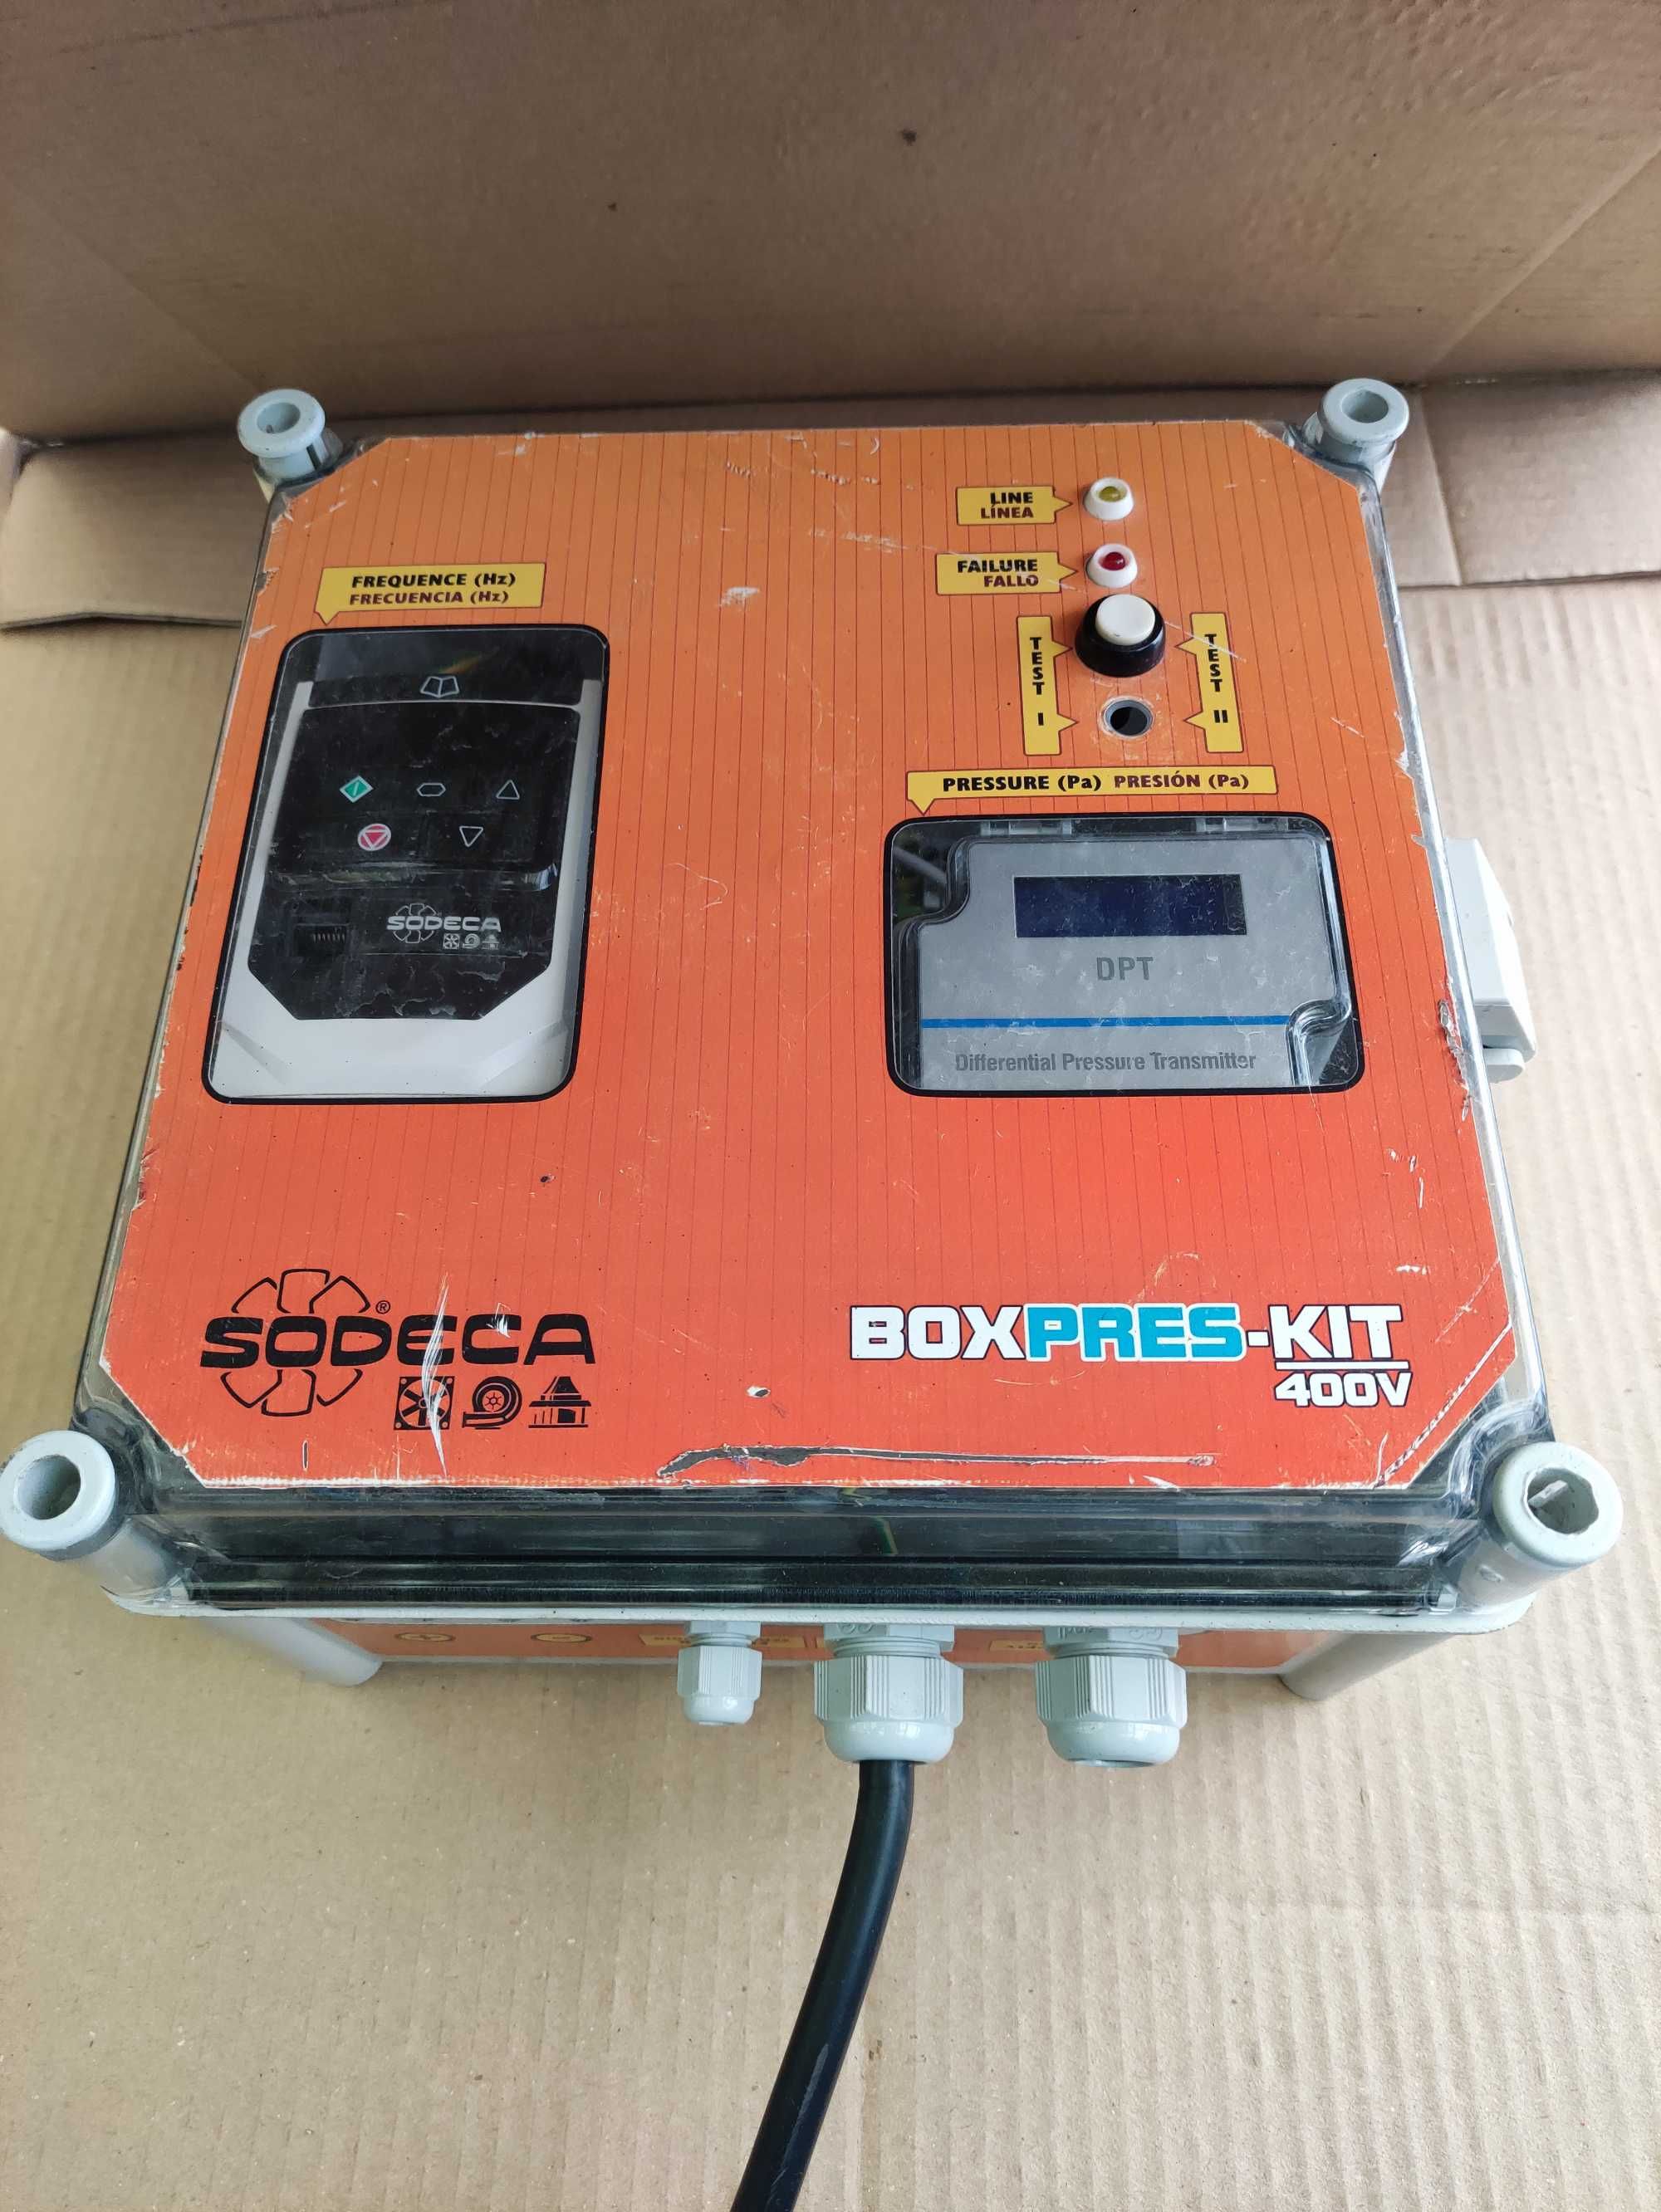 BOXPREX-KIT 400V 1,5Kw "Sodeca"